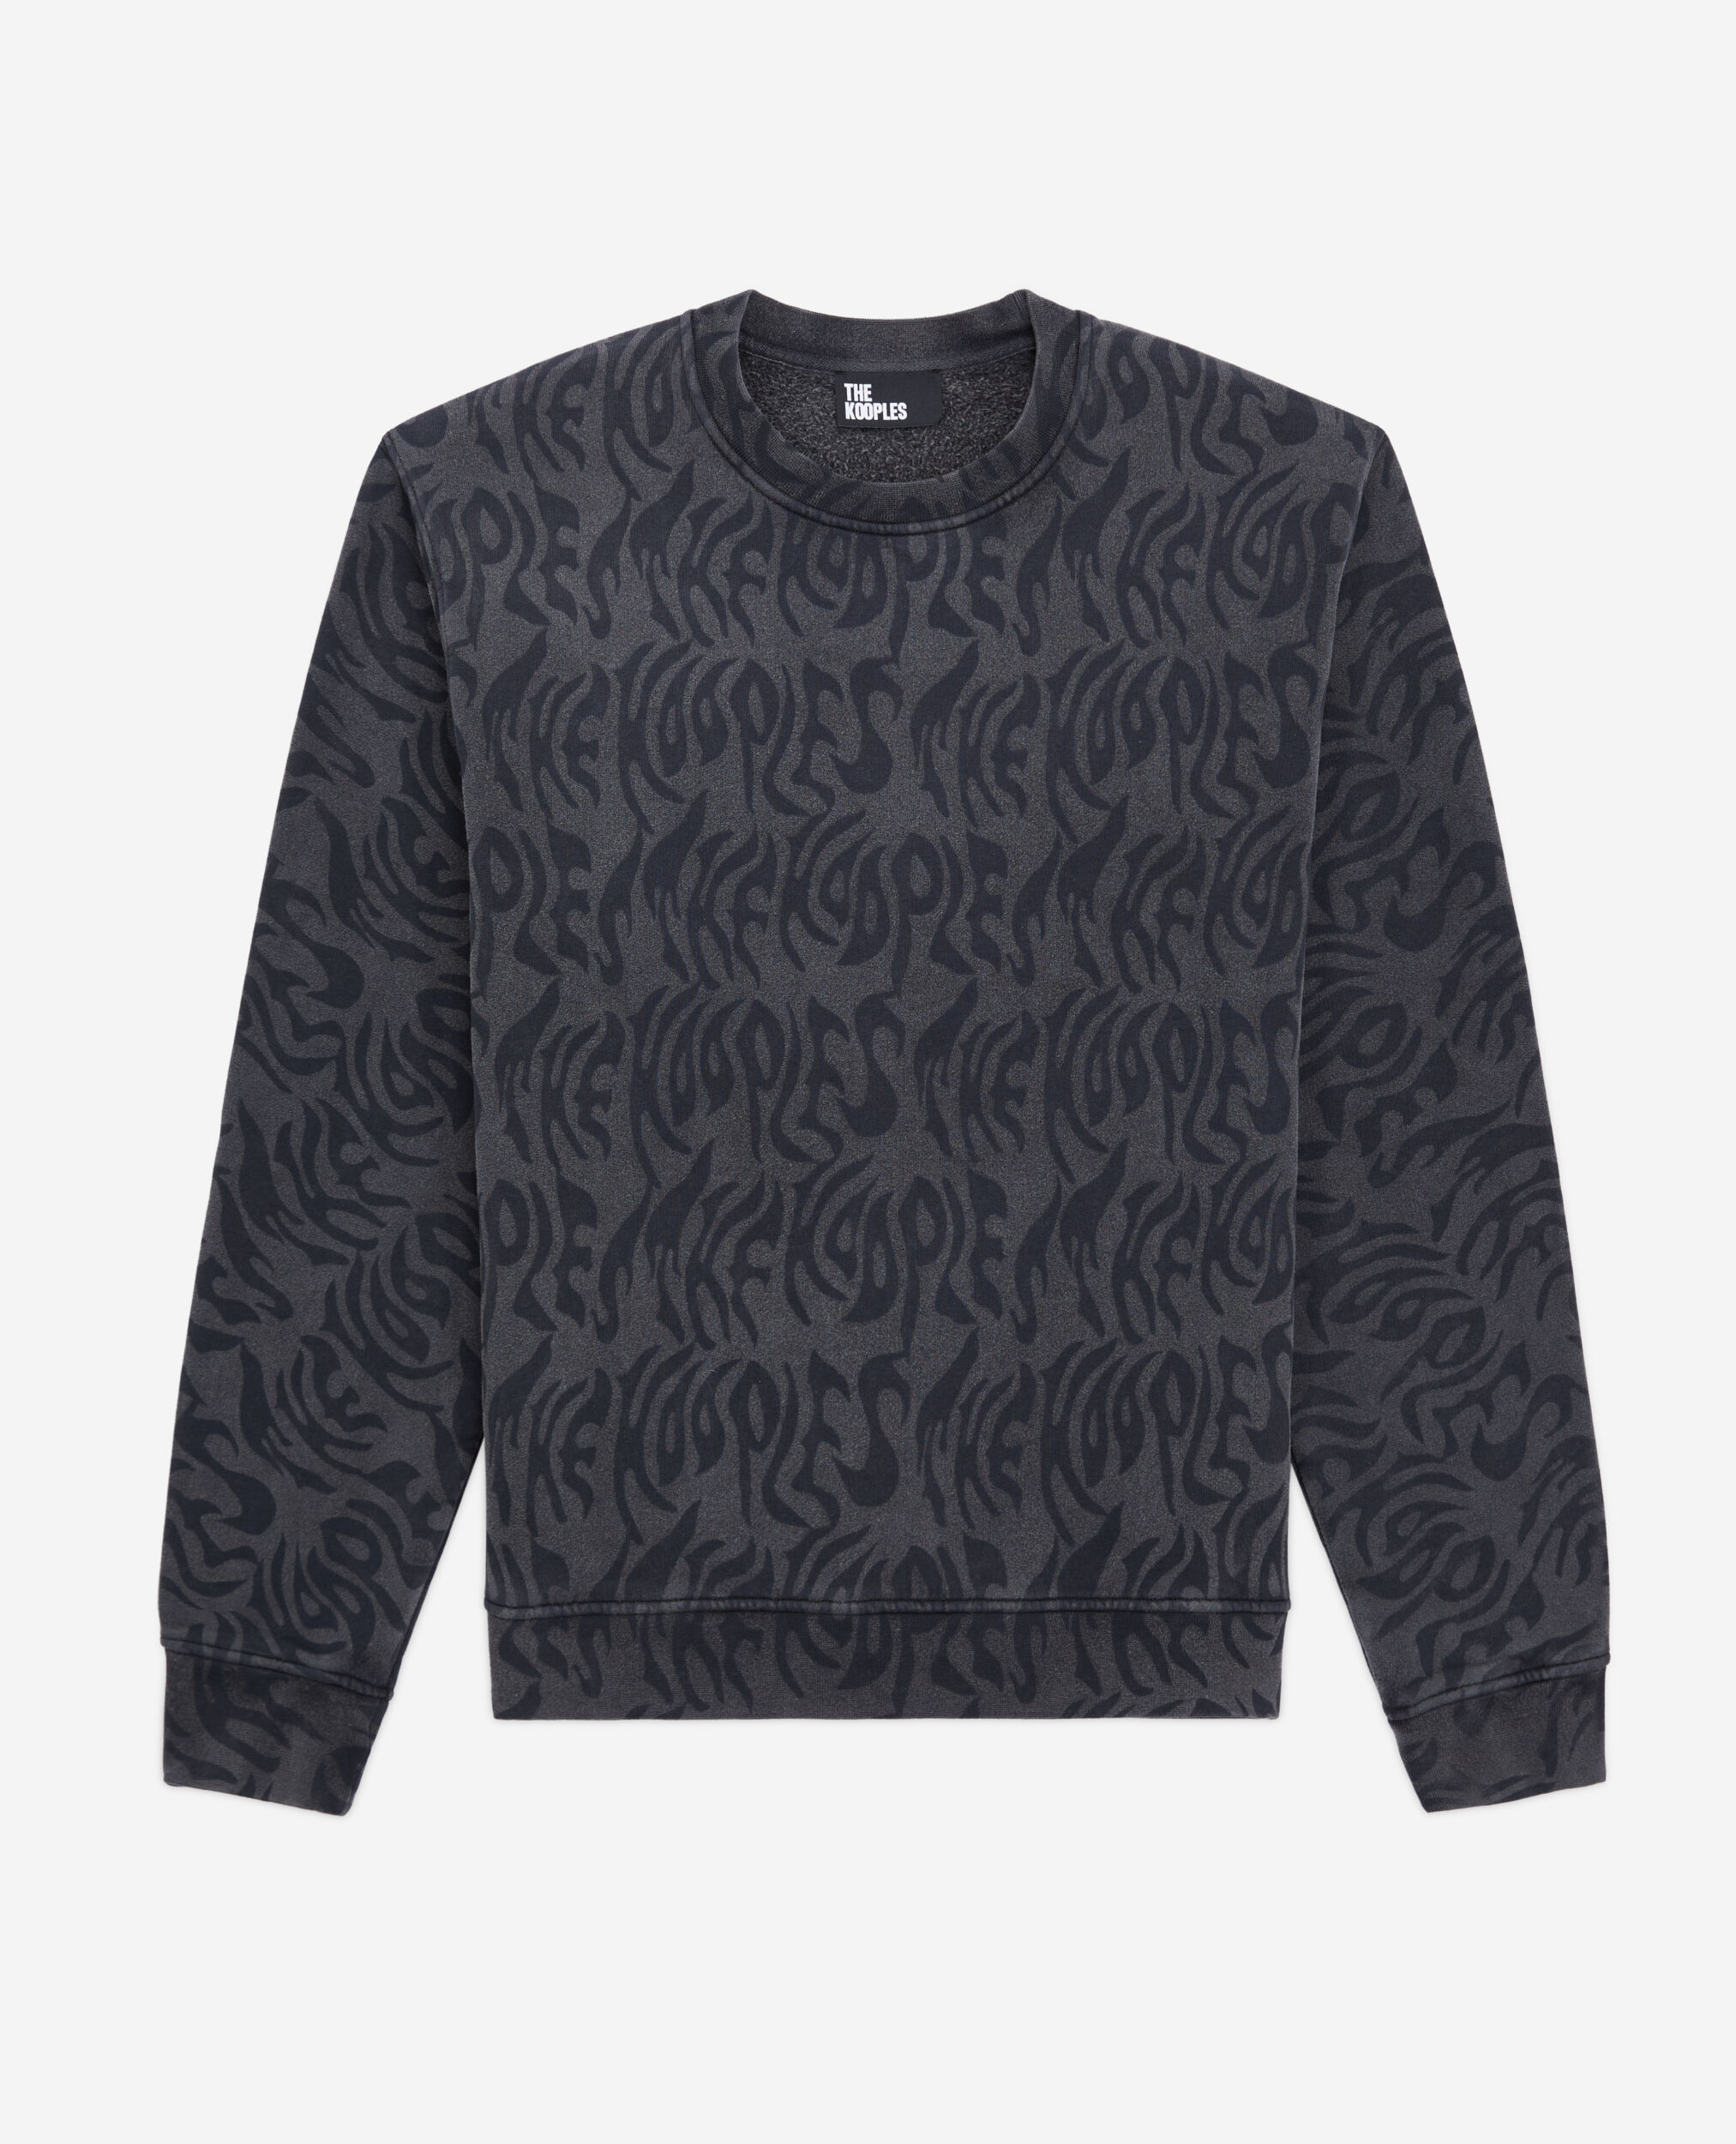 Sweatshirt Homme imprimé, BLACK WASHED, hi-res image number null